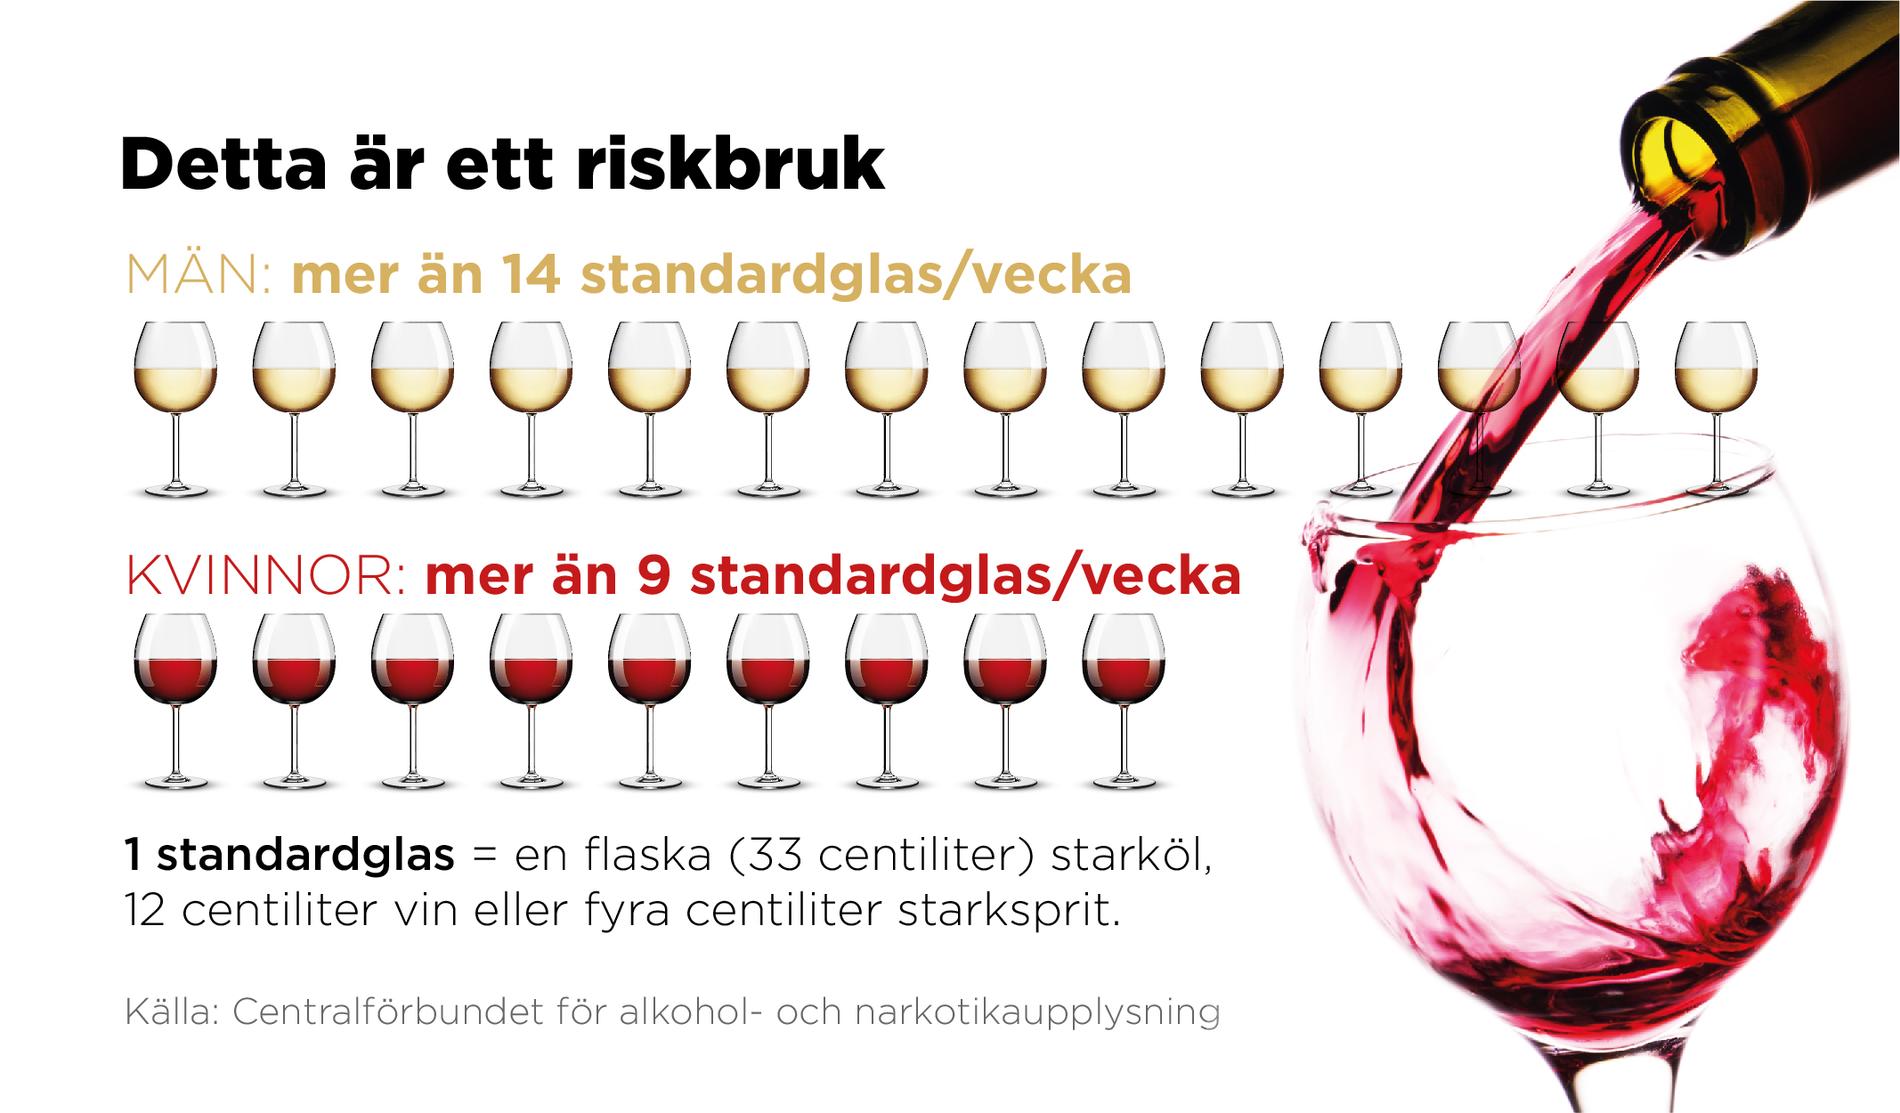 Omkring 12 procent av männen och 9 procent av kvinnorna i Sverige bedöms ha riskabla alkoholvanor.